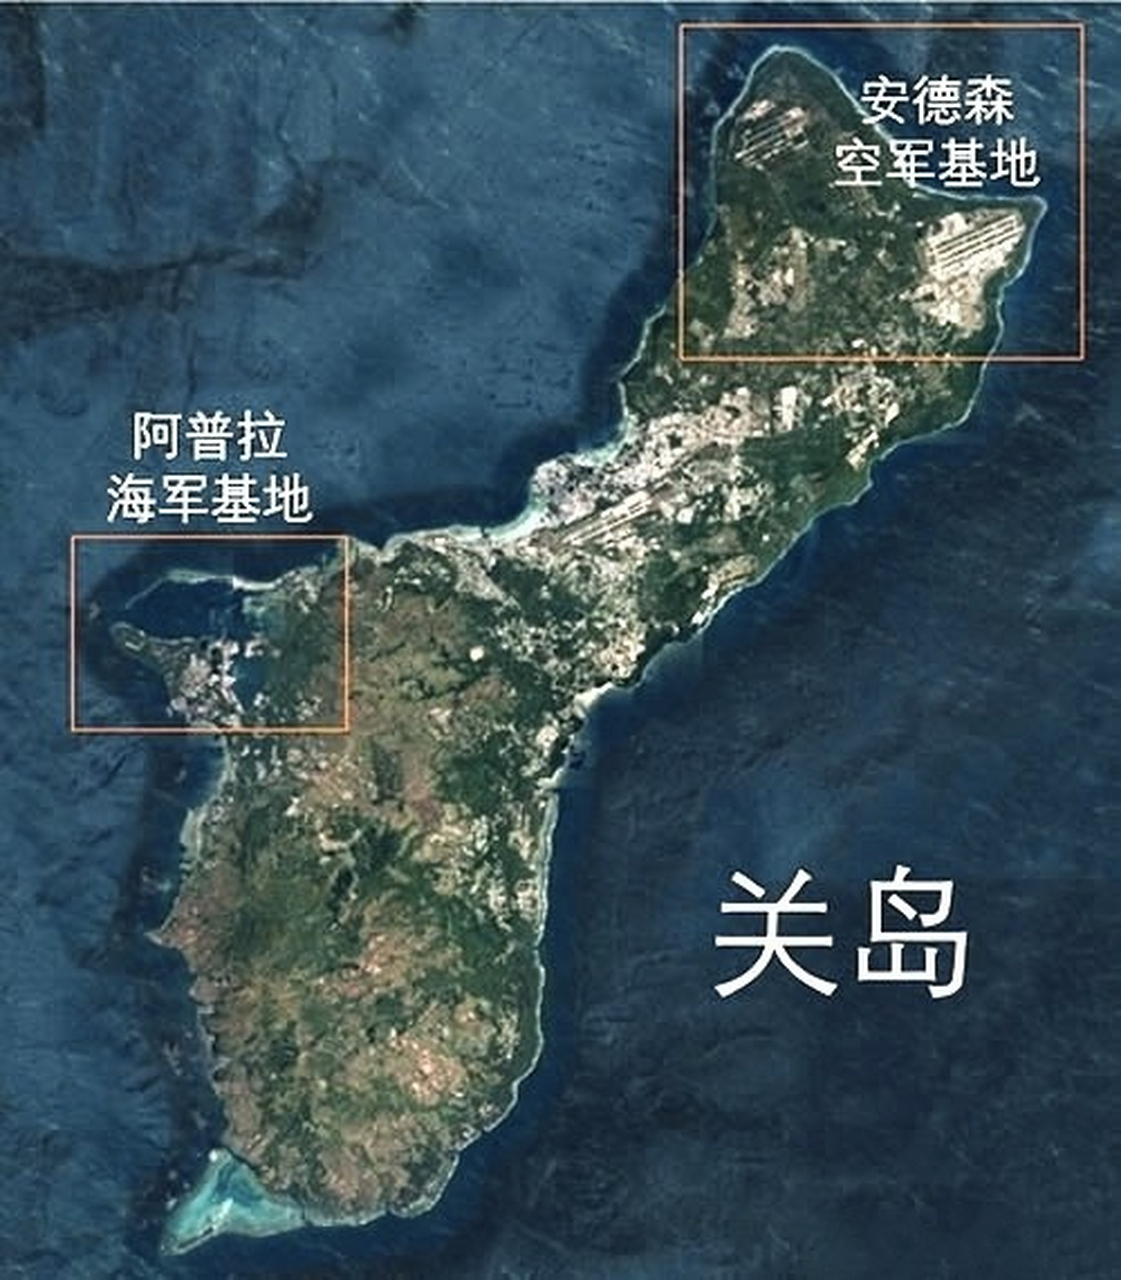 关岛,总面积549平方公里,略大于中国第四大岛舟山岛,为美国非正式的